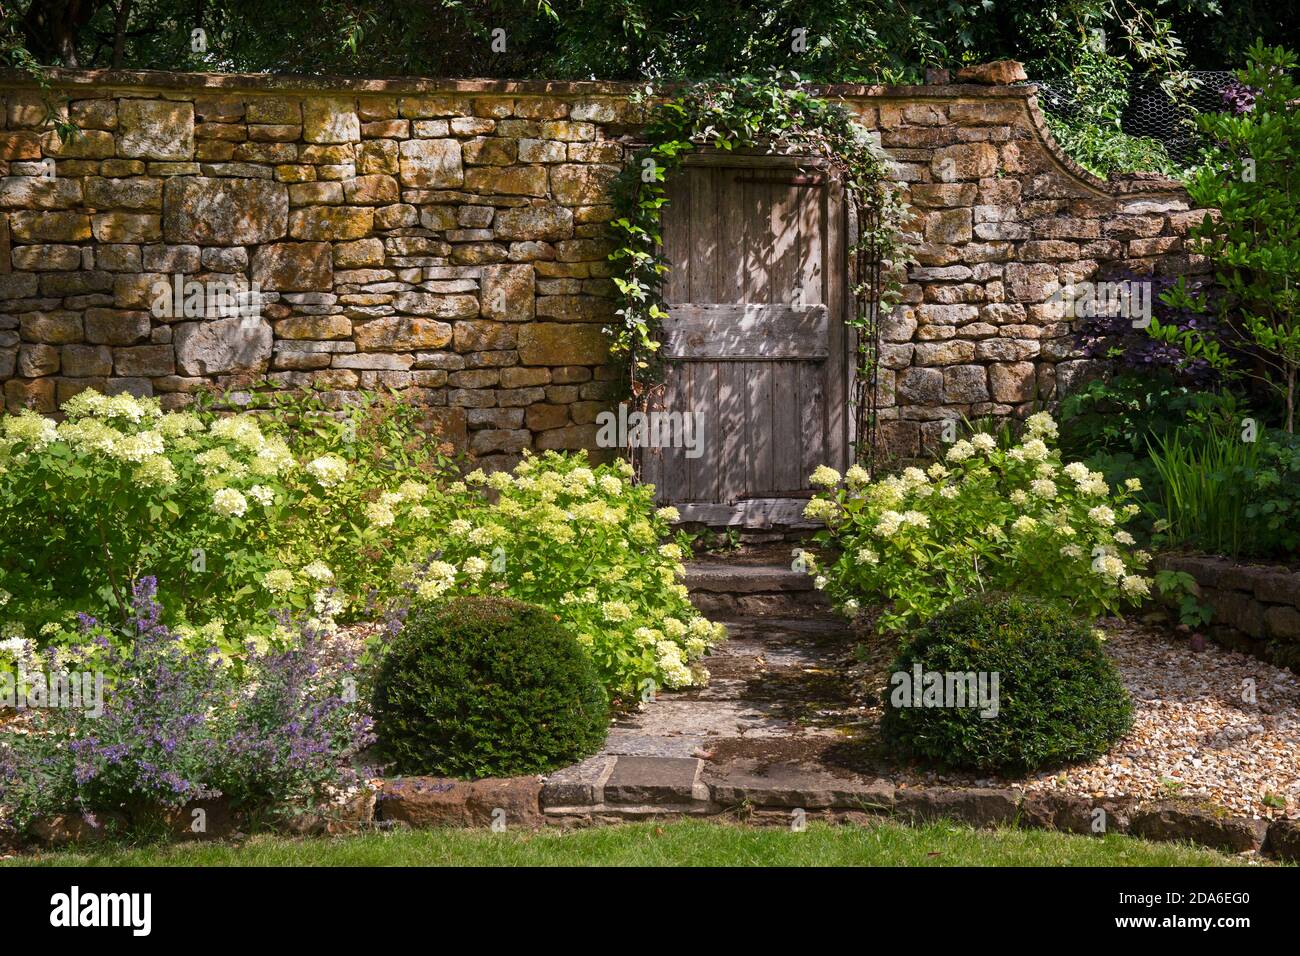 Porte en bois dans le mur en pierre dans le jardin anglais, Angleterre, Europe Banque D'Images